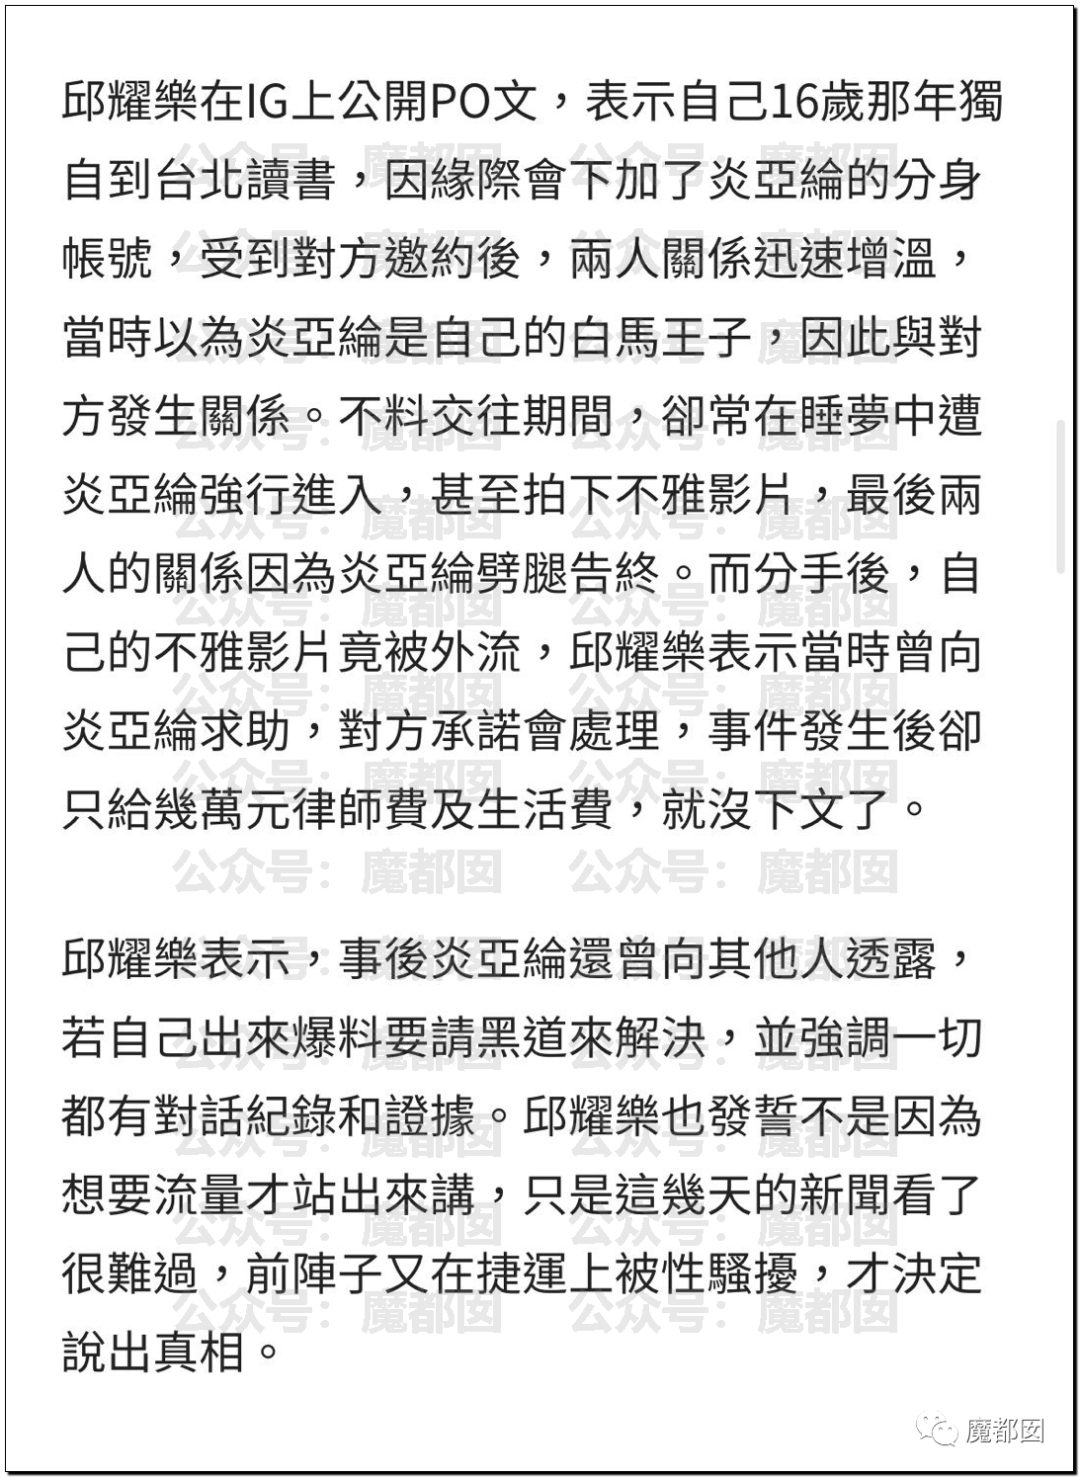 炸裂！台湾知名男星炎亚纶被曝和未成年男孩发生关系并出轨！